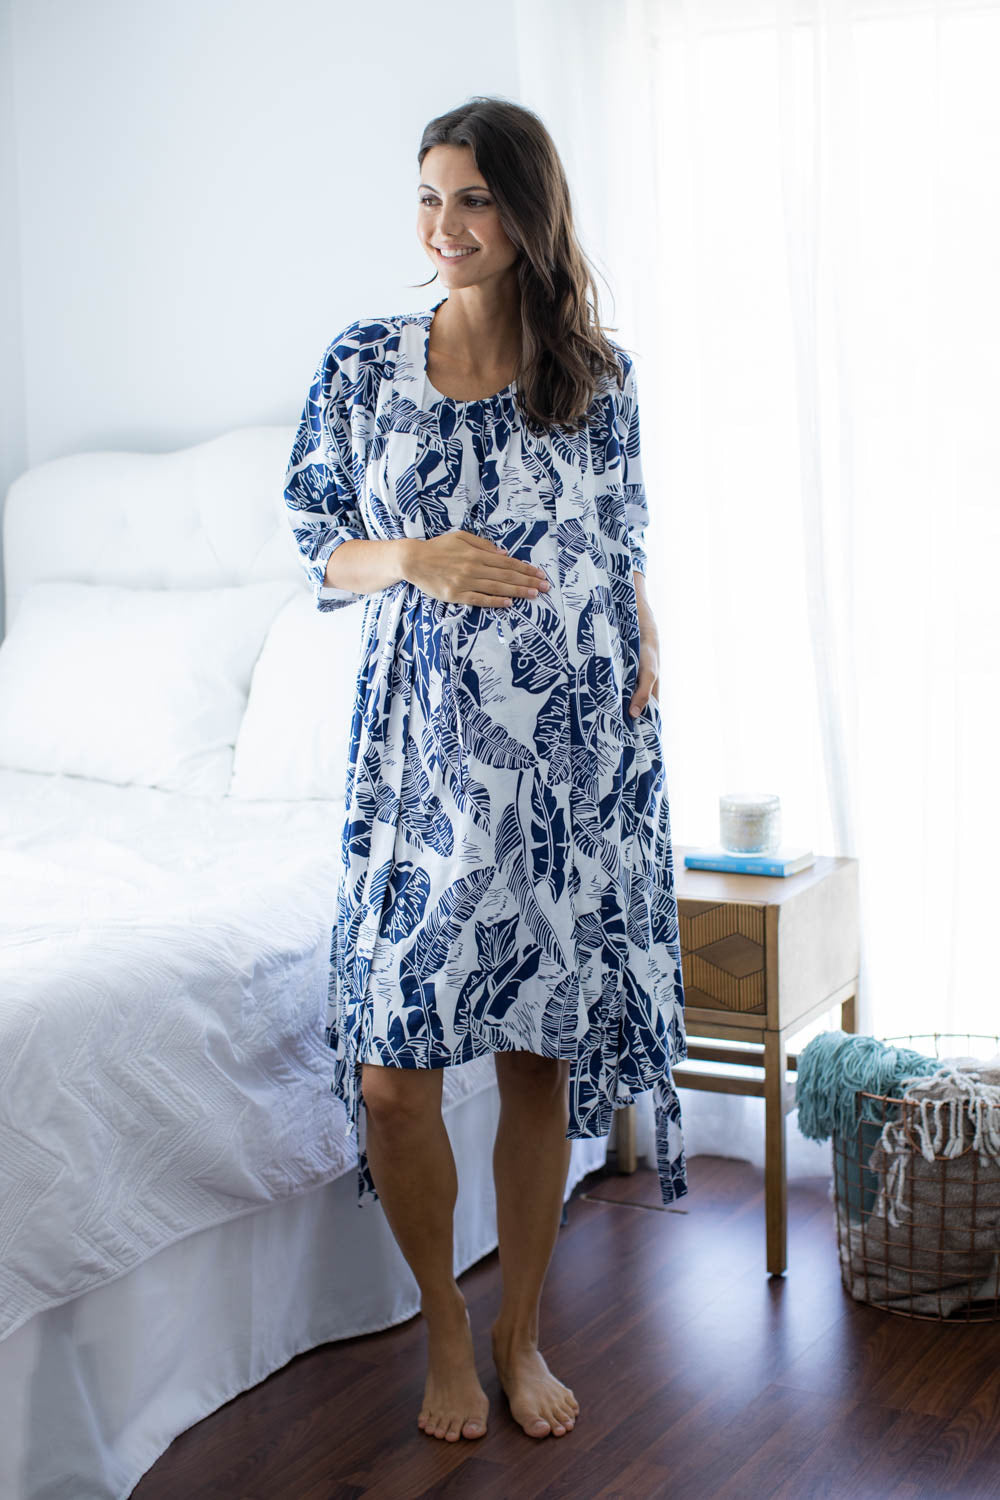 Serra 3 in 1 Labor Gown & Matching Pregnancy/Postpartum Robe Set